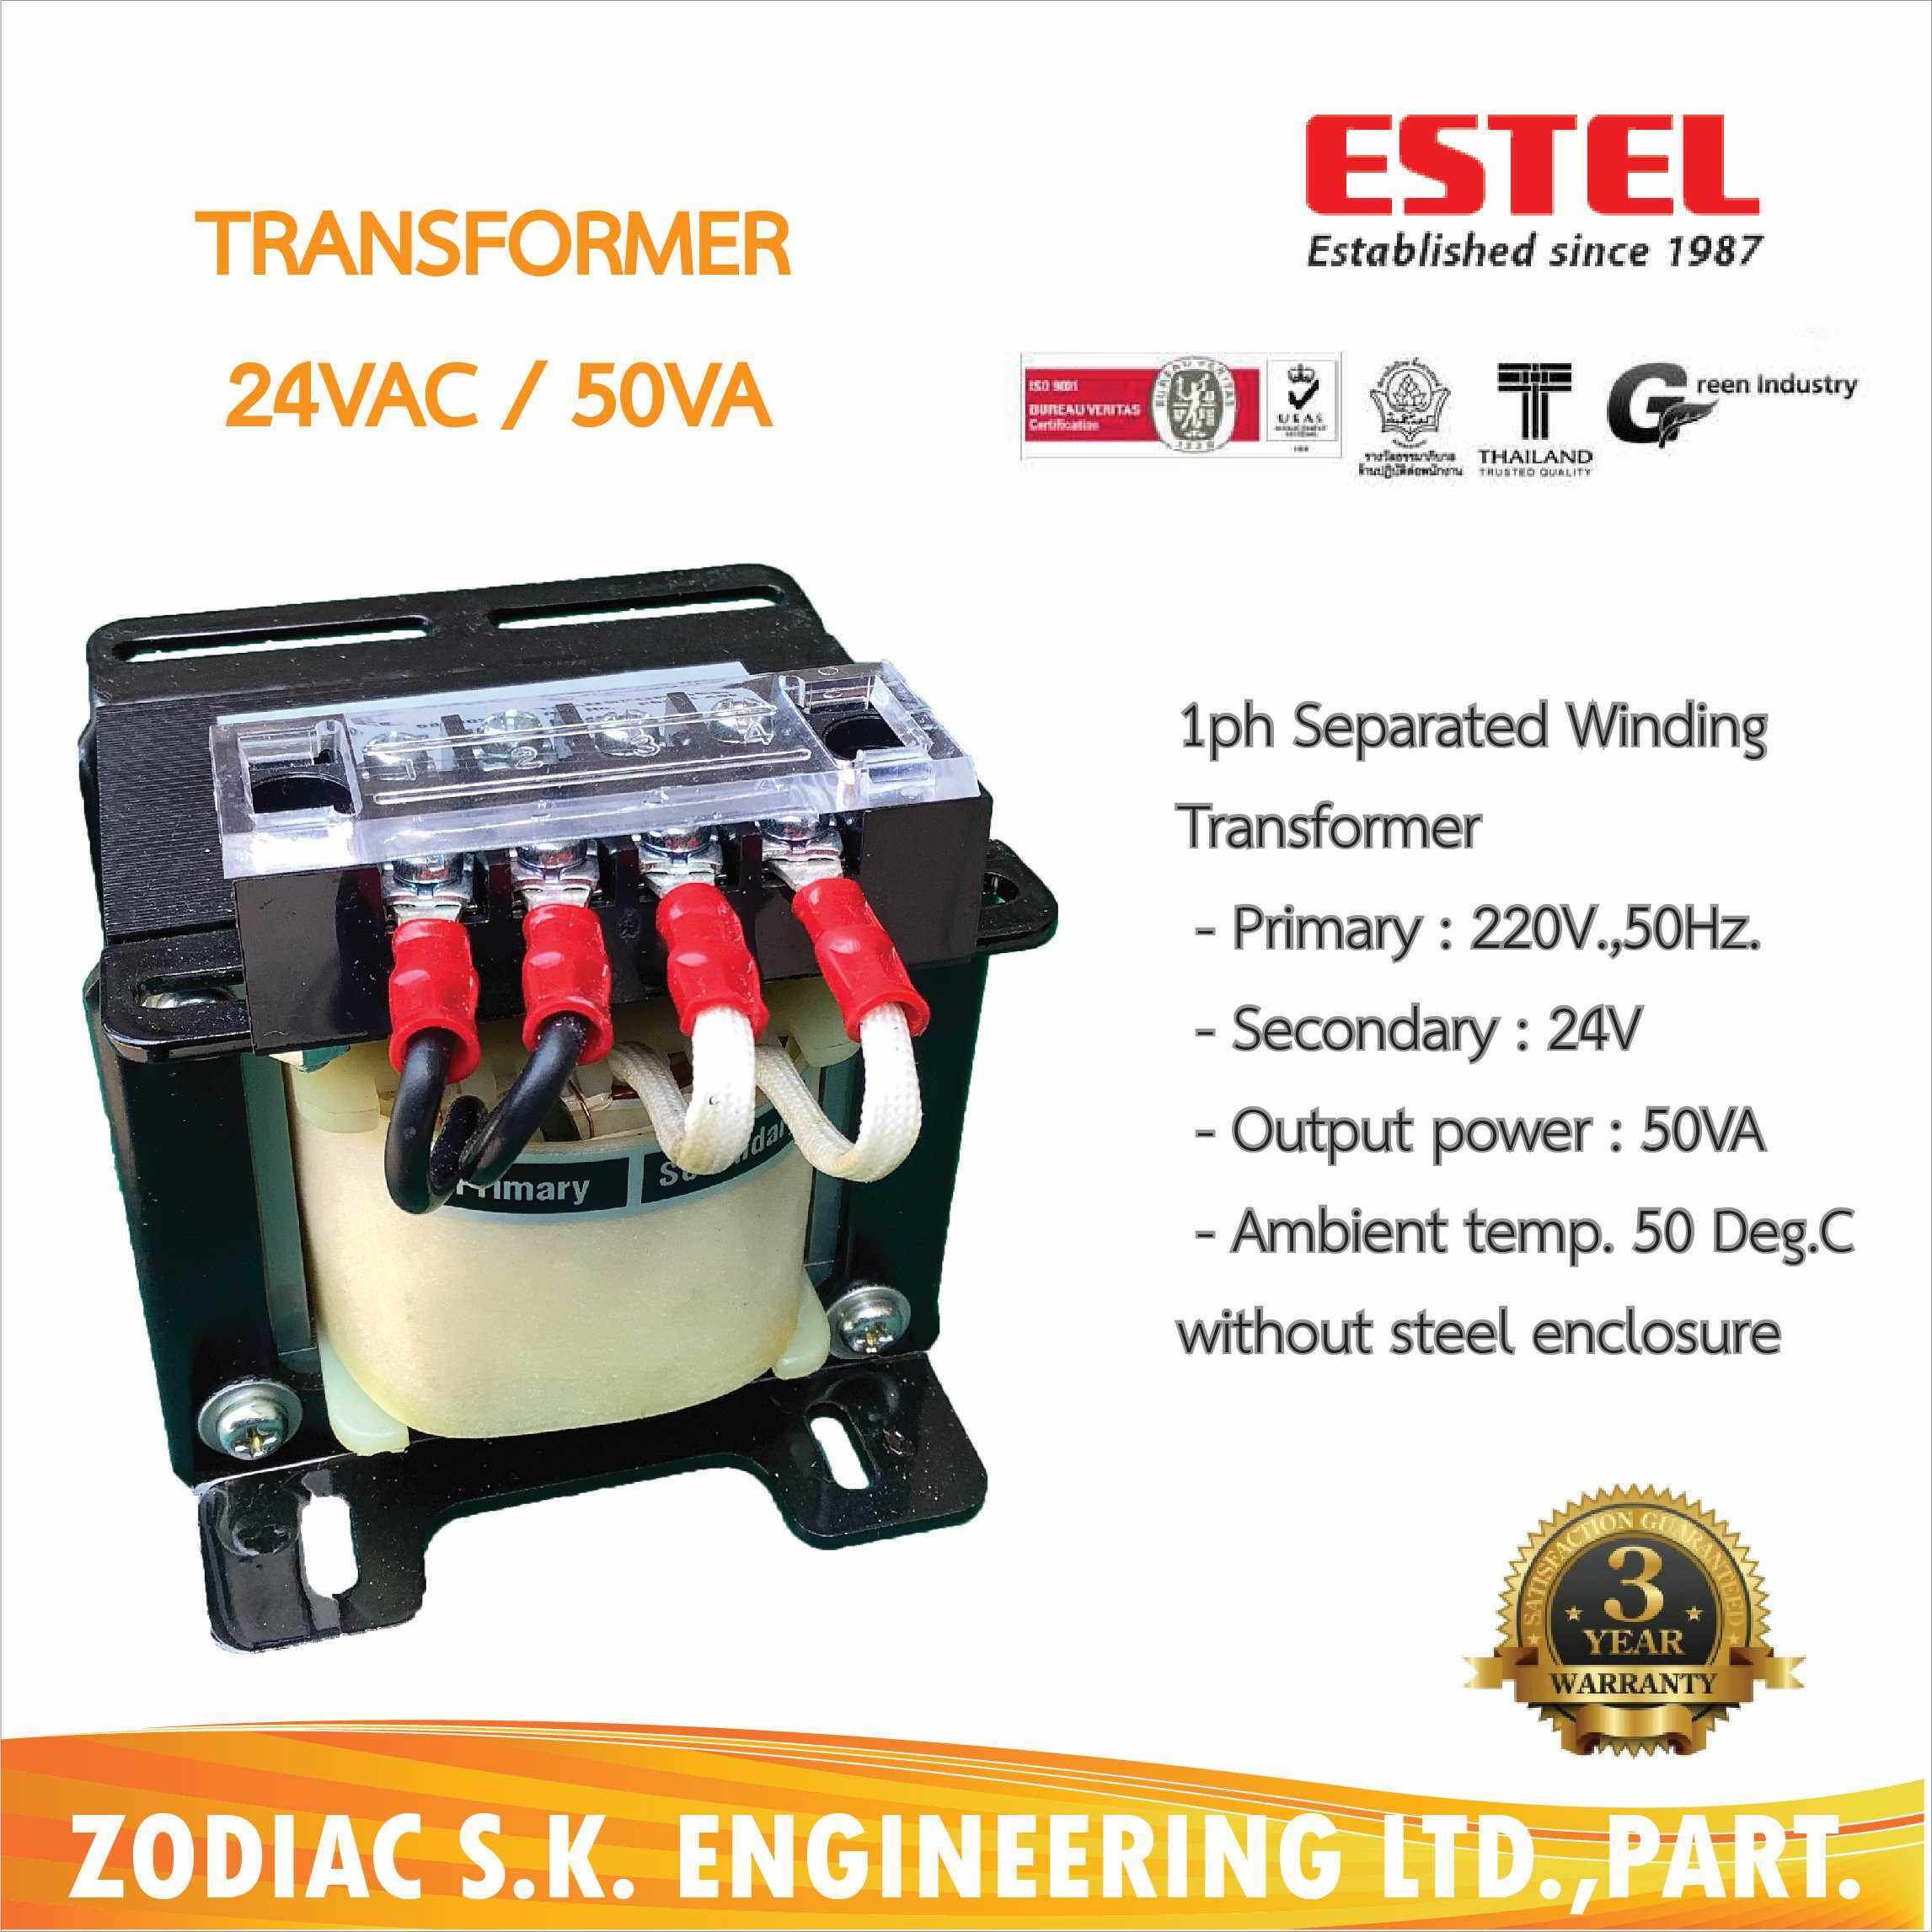 TRANSFORMER 24V / 50VA ( 2.0 A ) ESTEL หม้อแปลงไฟ AC 24V / 50AV กระแส 2.0แอมป์